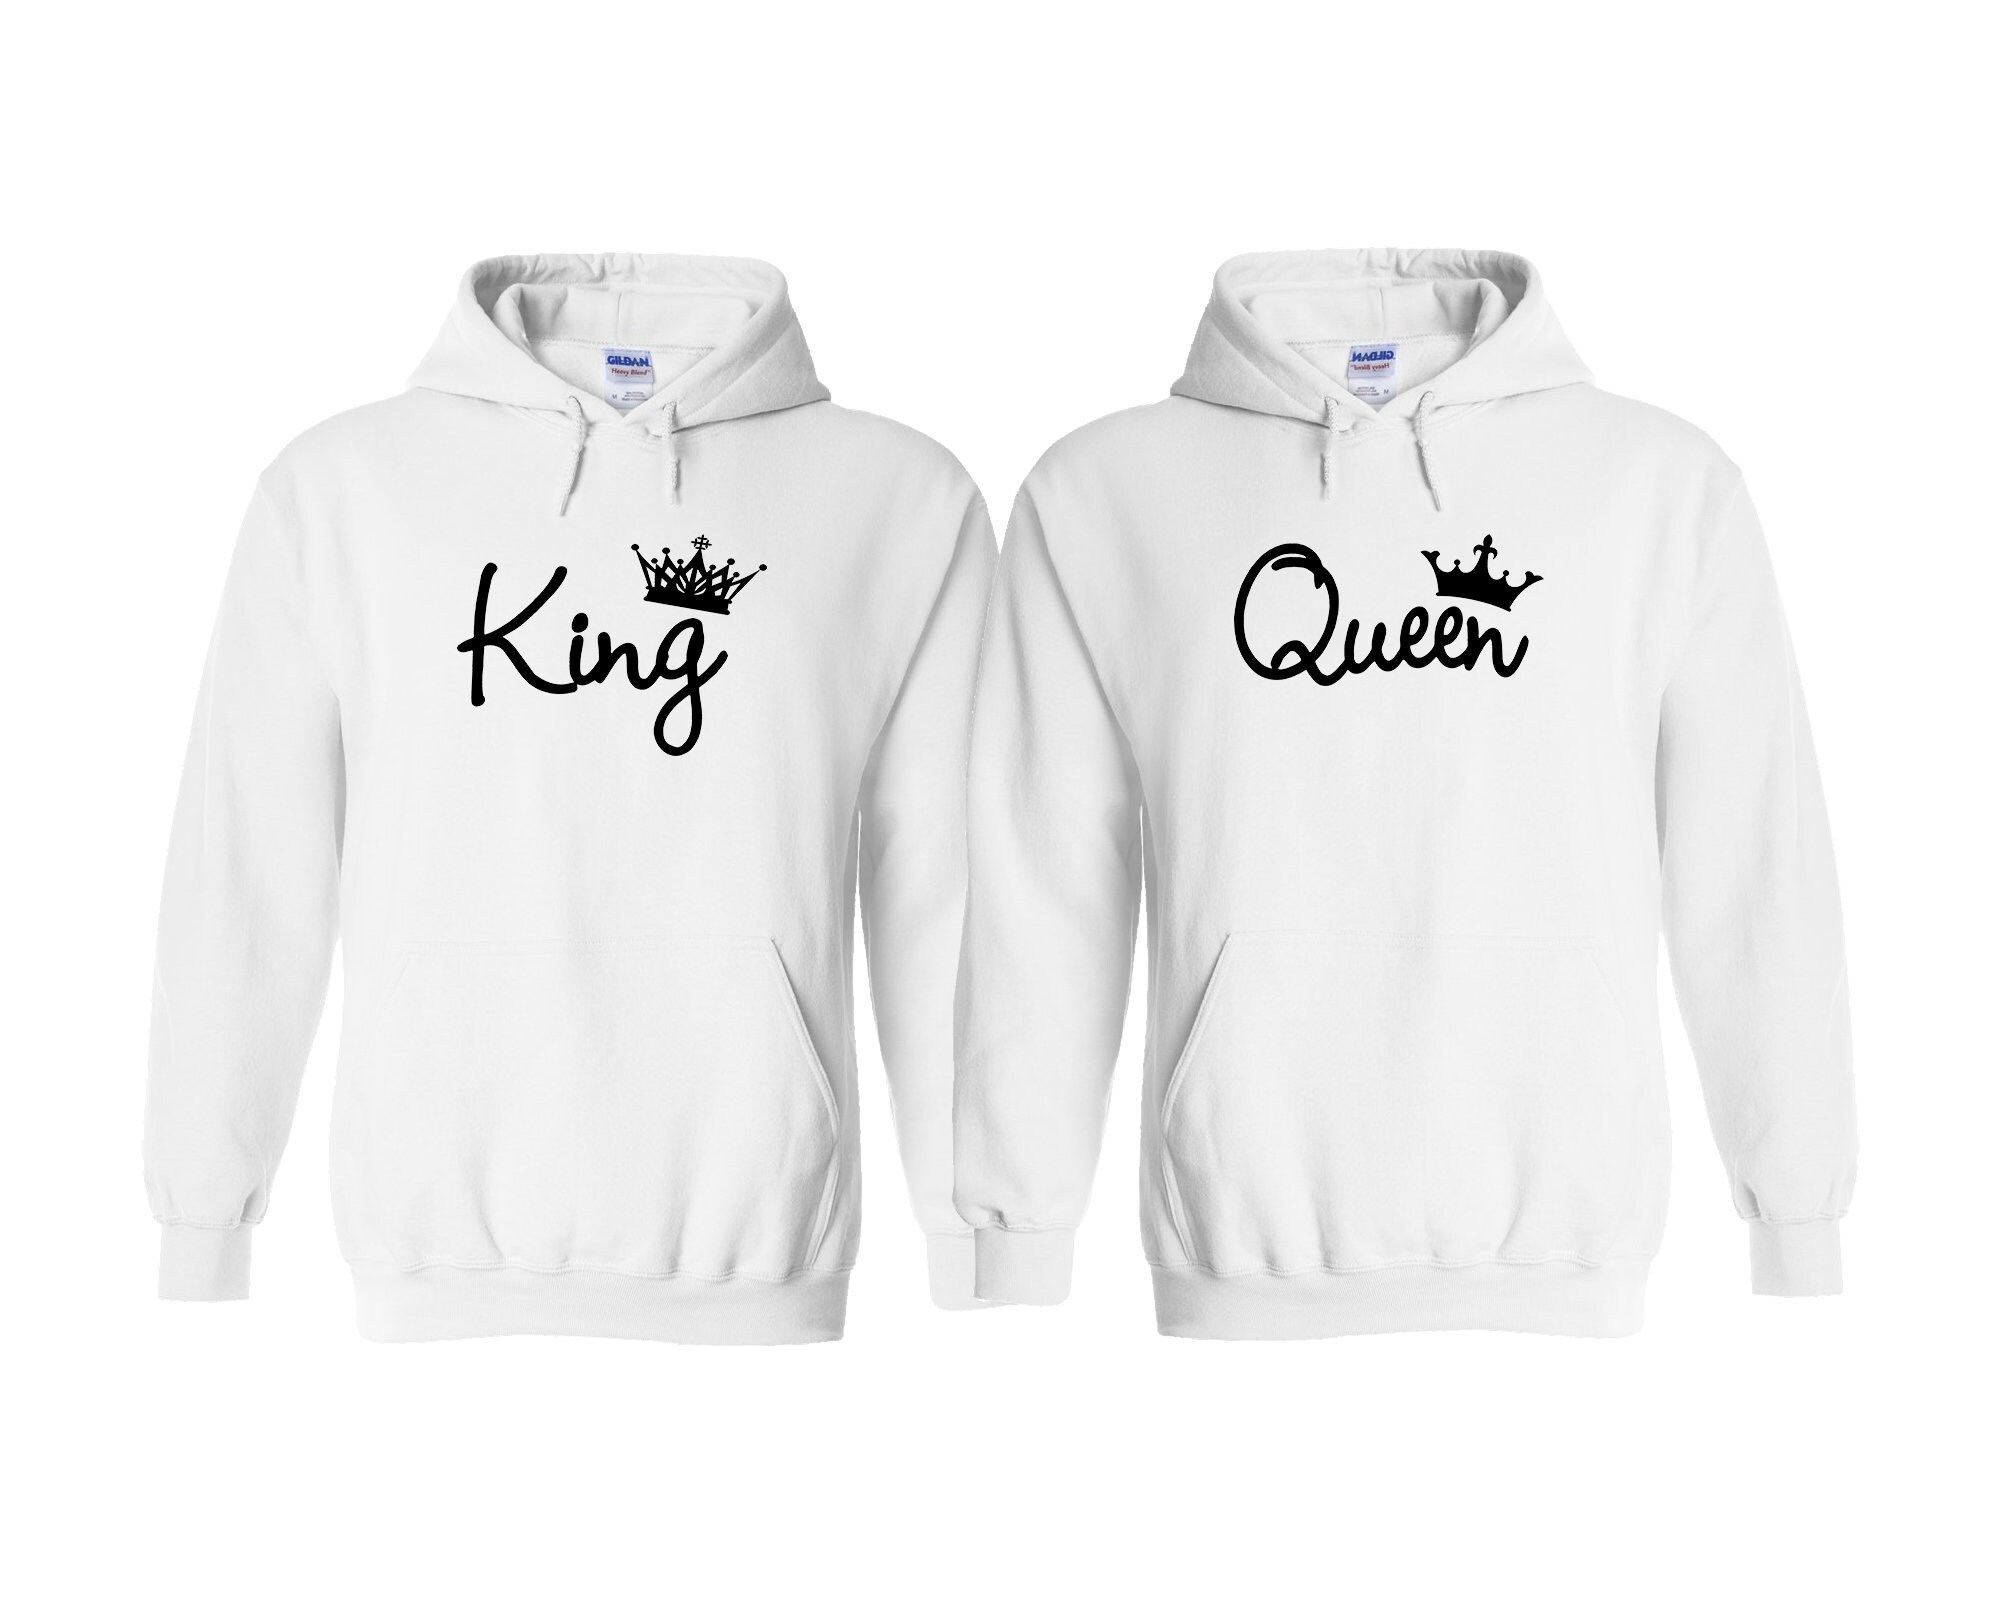 Sweatshirt com capuz King e Queen conjunto namorados - Personalizei